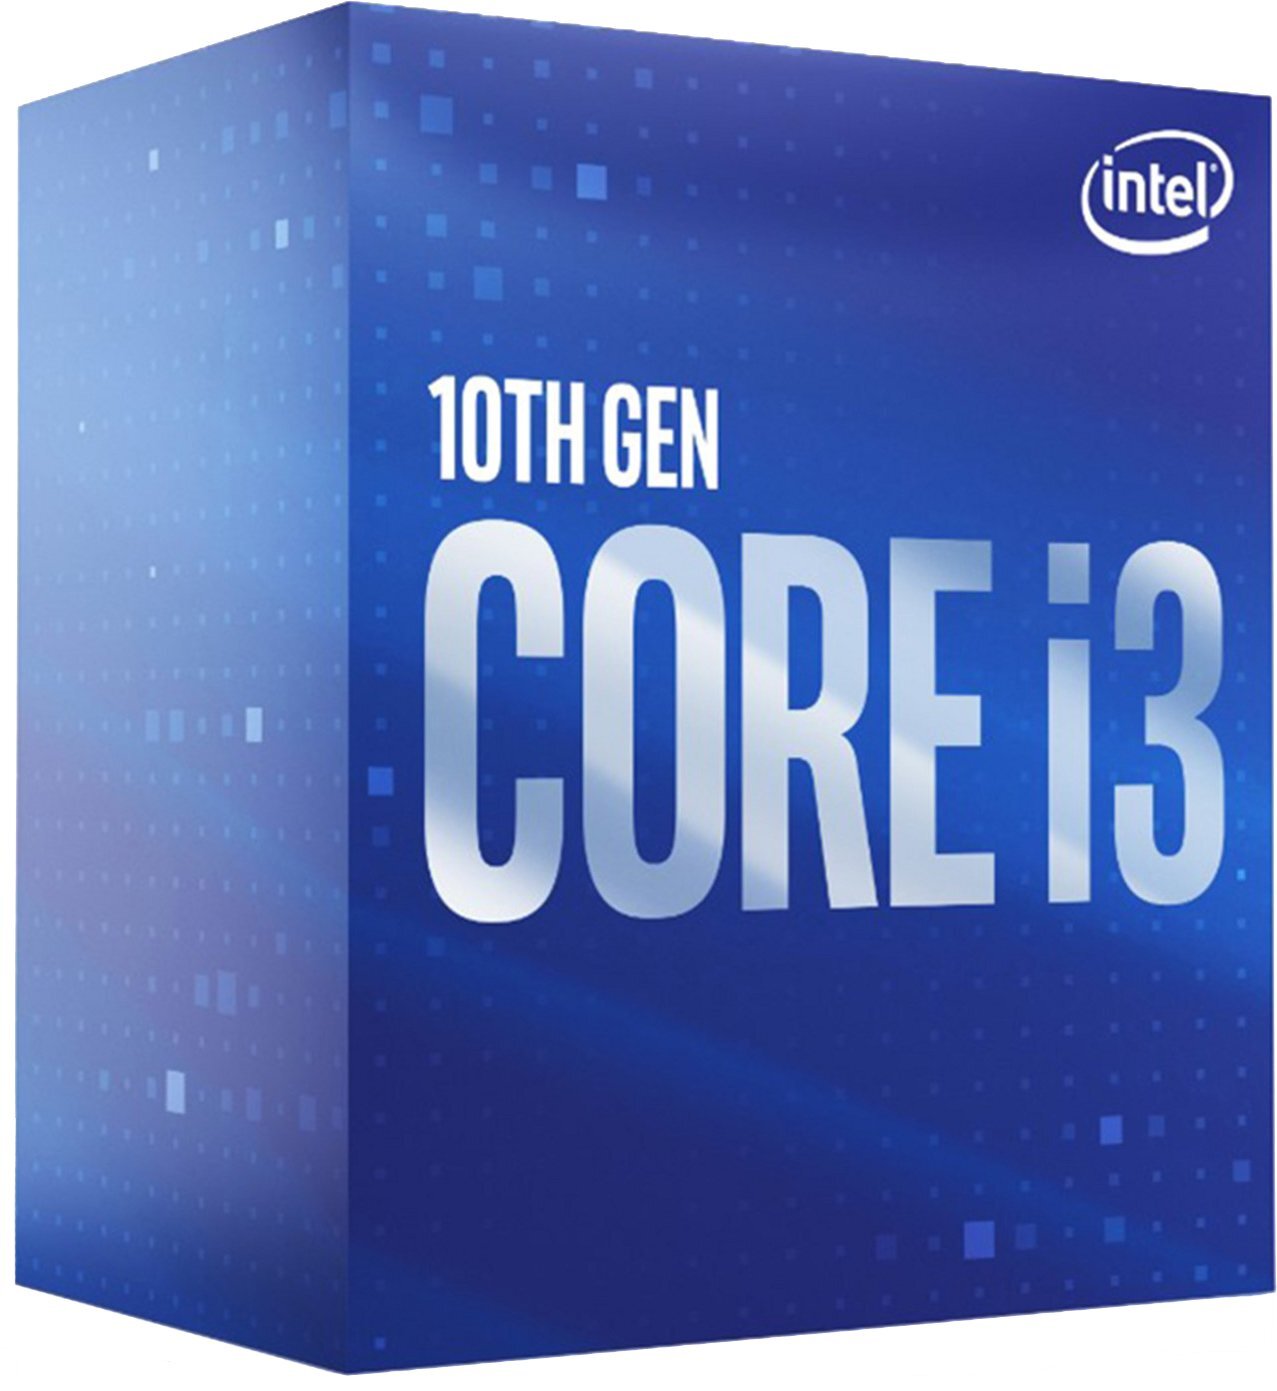 Процессор Intel Core i3-10105 4/8 3.7GHz 6M LGA1200 65W box (BX8070110105) фото 